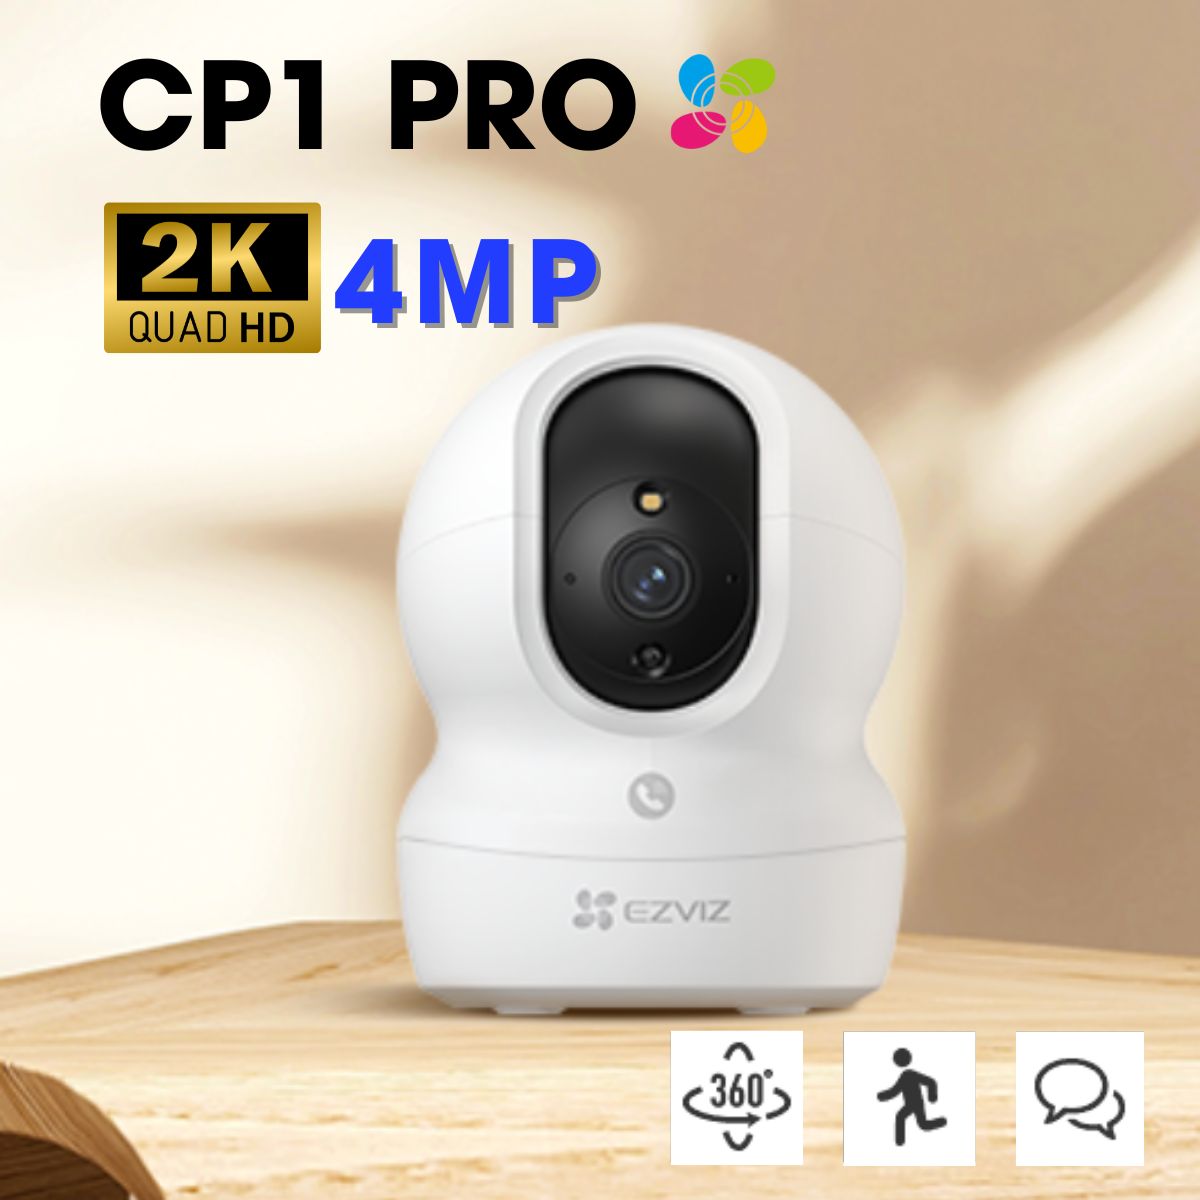 Camera Ezviz CP1 Pro 2K 4Mp quay 360 độ, phát hiện dạng người, đàm thoại hai chiều, đèn còi báo động